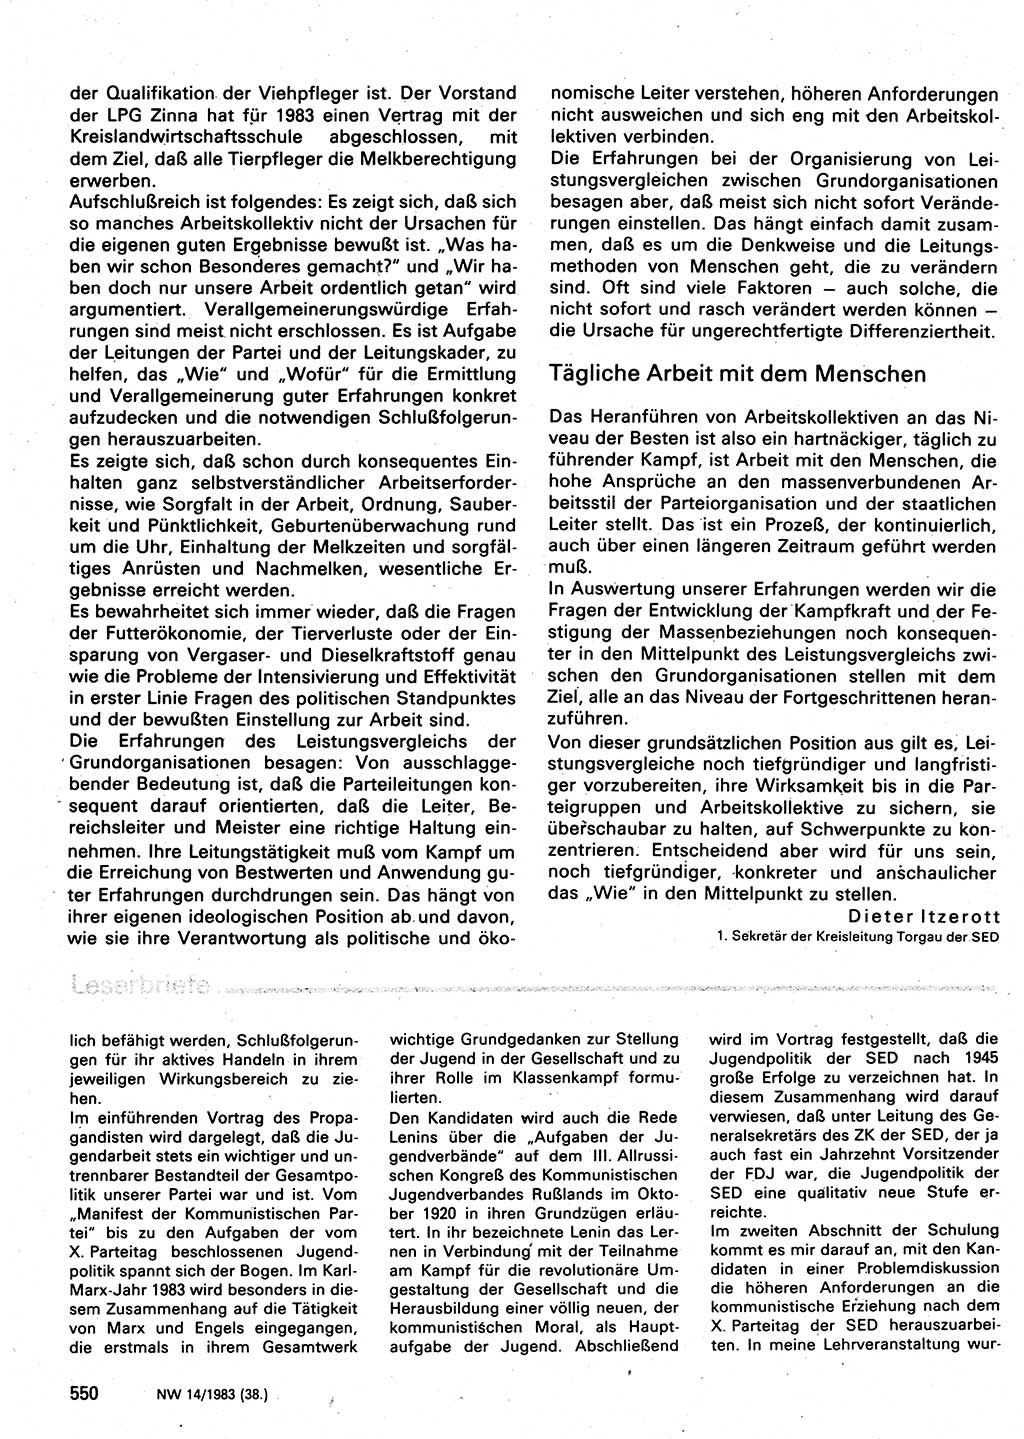 Neuer Weg (NW), Organ des Zentralkomitees (ZK) der SED (Sozialistische Einheitspartei Deutschlands) für Fragen des Parteilebens, 38. Jahrgang [Deutsche Demokratische Republik (DDR)] 1983, Seite 550 (NW ZK SED DDR 1983, S. 550)